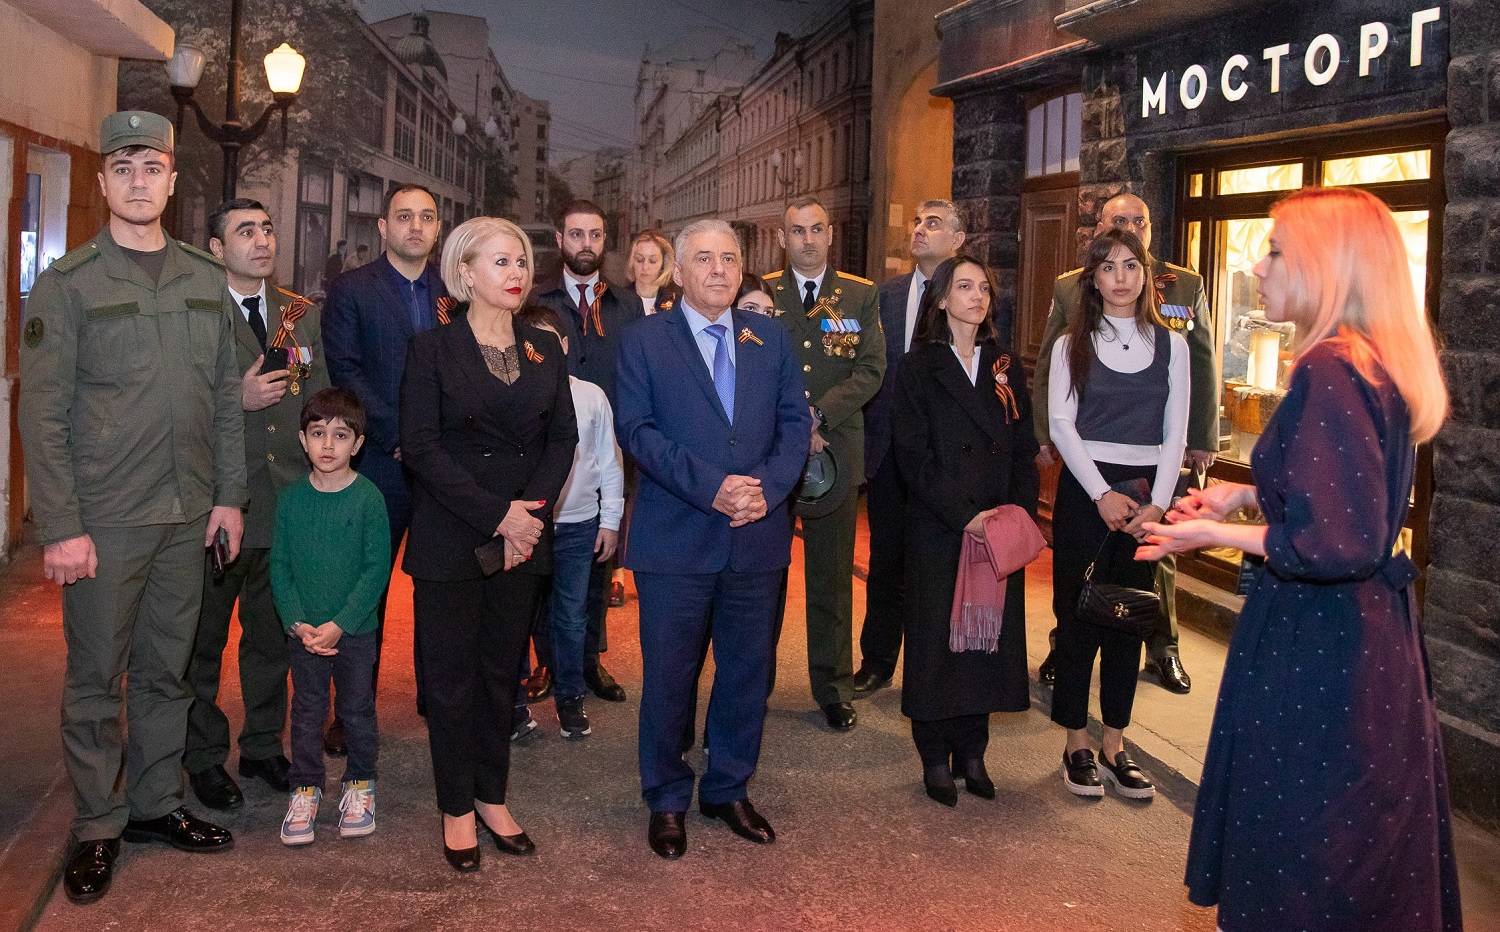 ՌԴ-ում ՀՀ դեսպանն այցելել է Մոսկվայի Հաղթանակի թանգարան